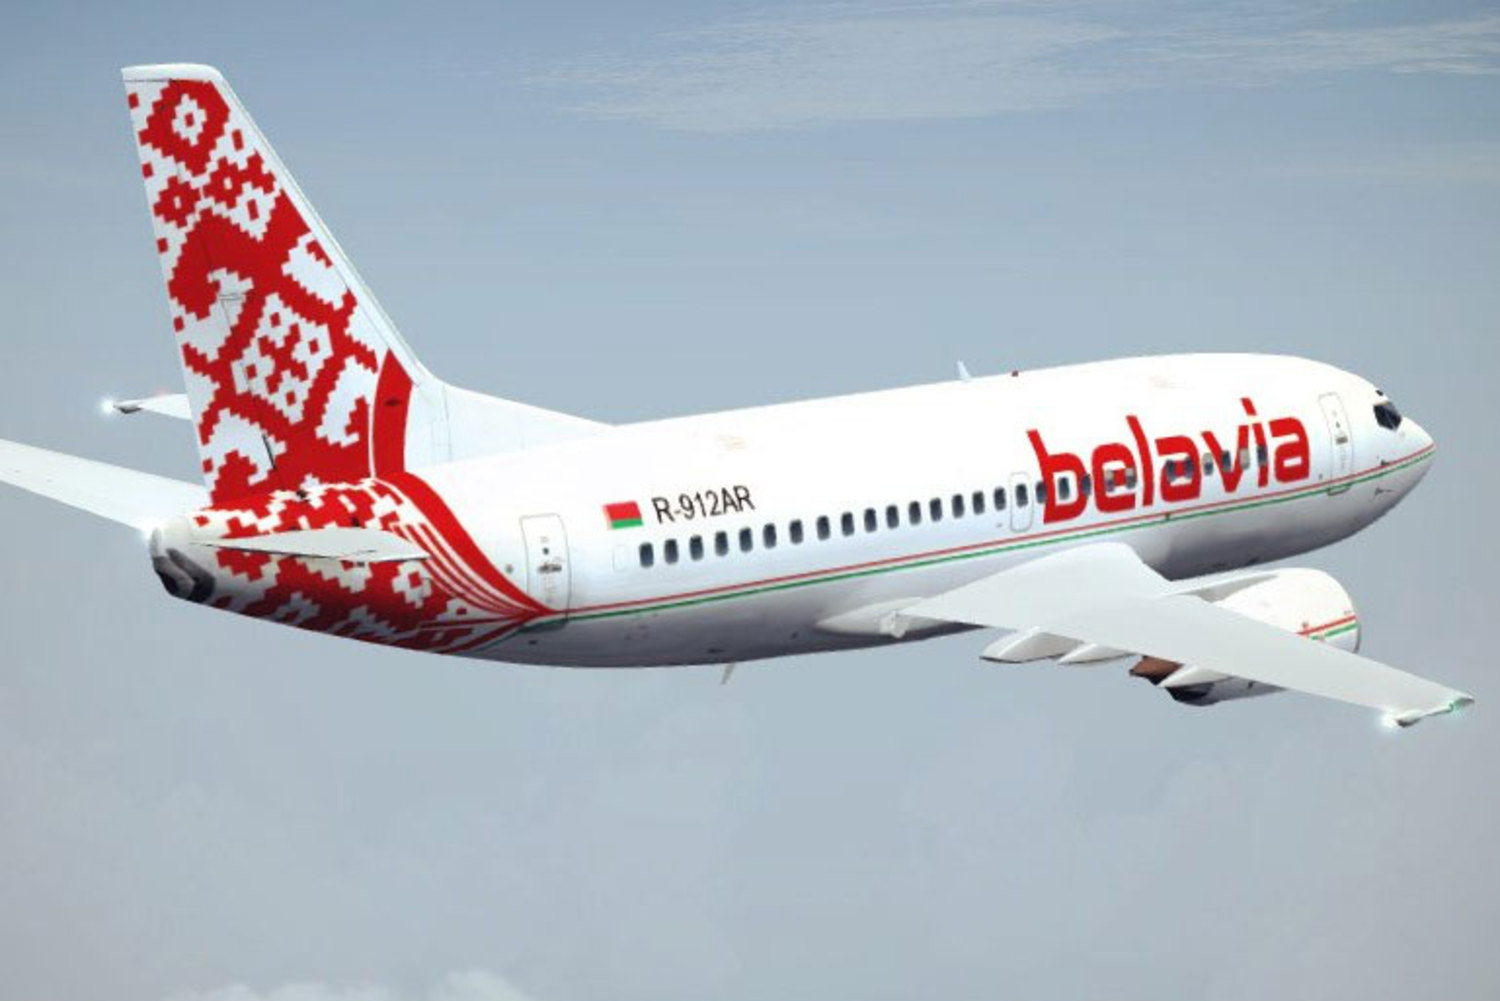 «Բելավիա» ավիաընկերությունը 2018 թ. մարտից վերսկսում է Մինսկ-Երևան-Մինսկ չվերթները